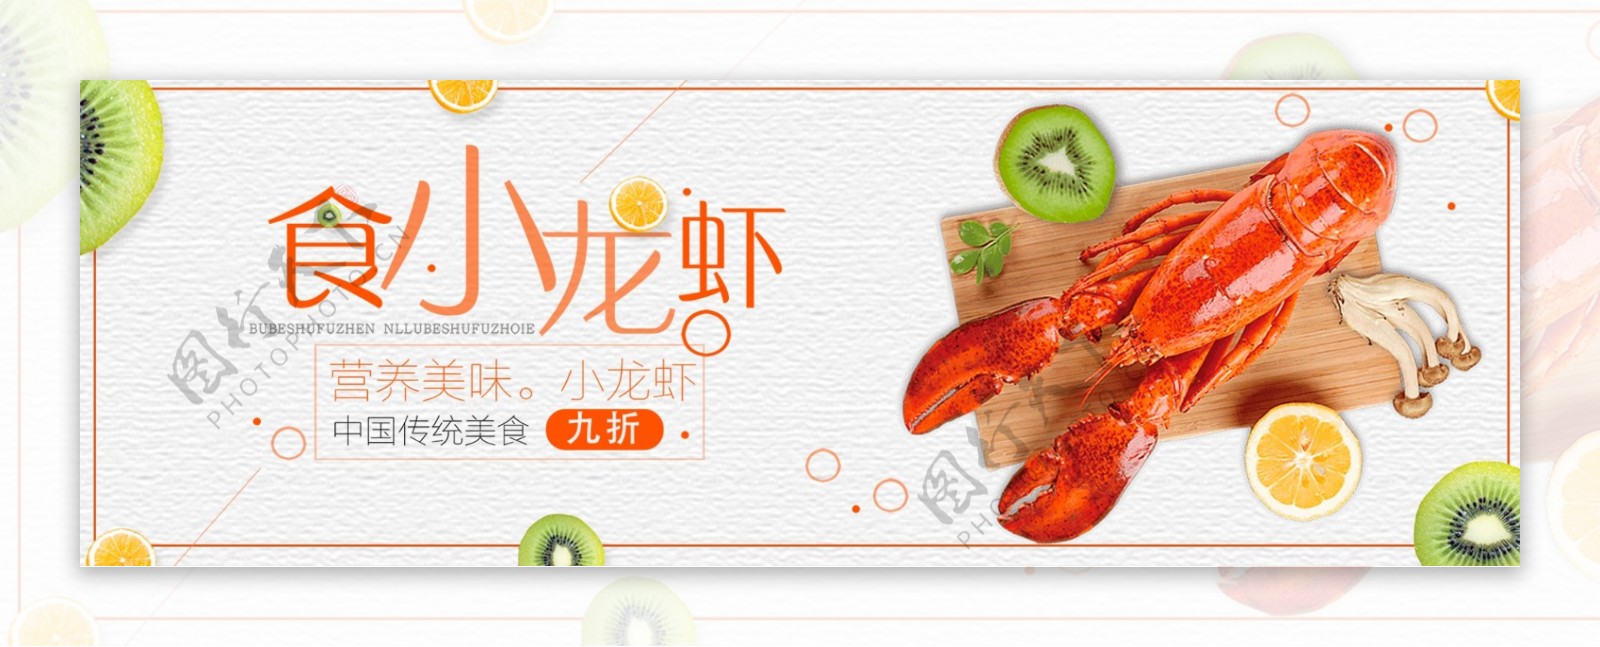 简约小清新美食小龙虾食品电商banner